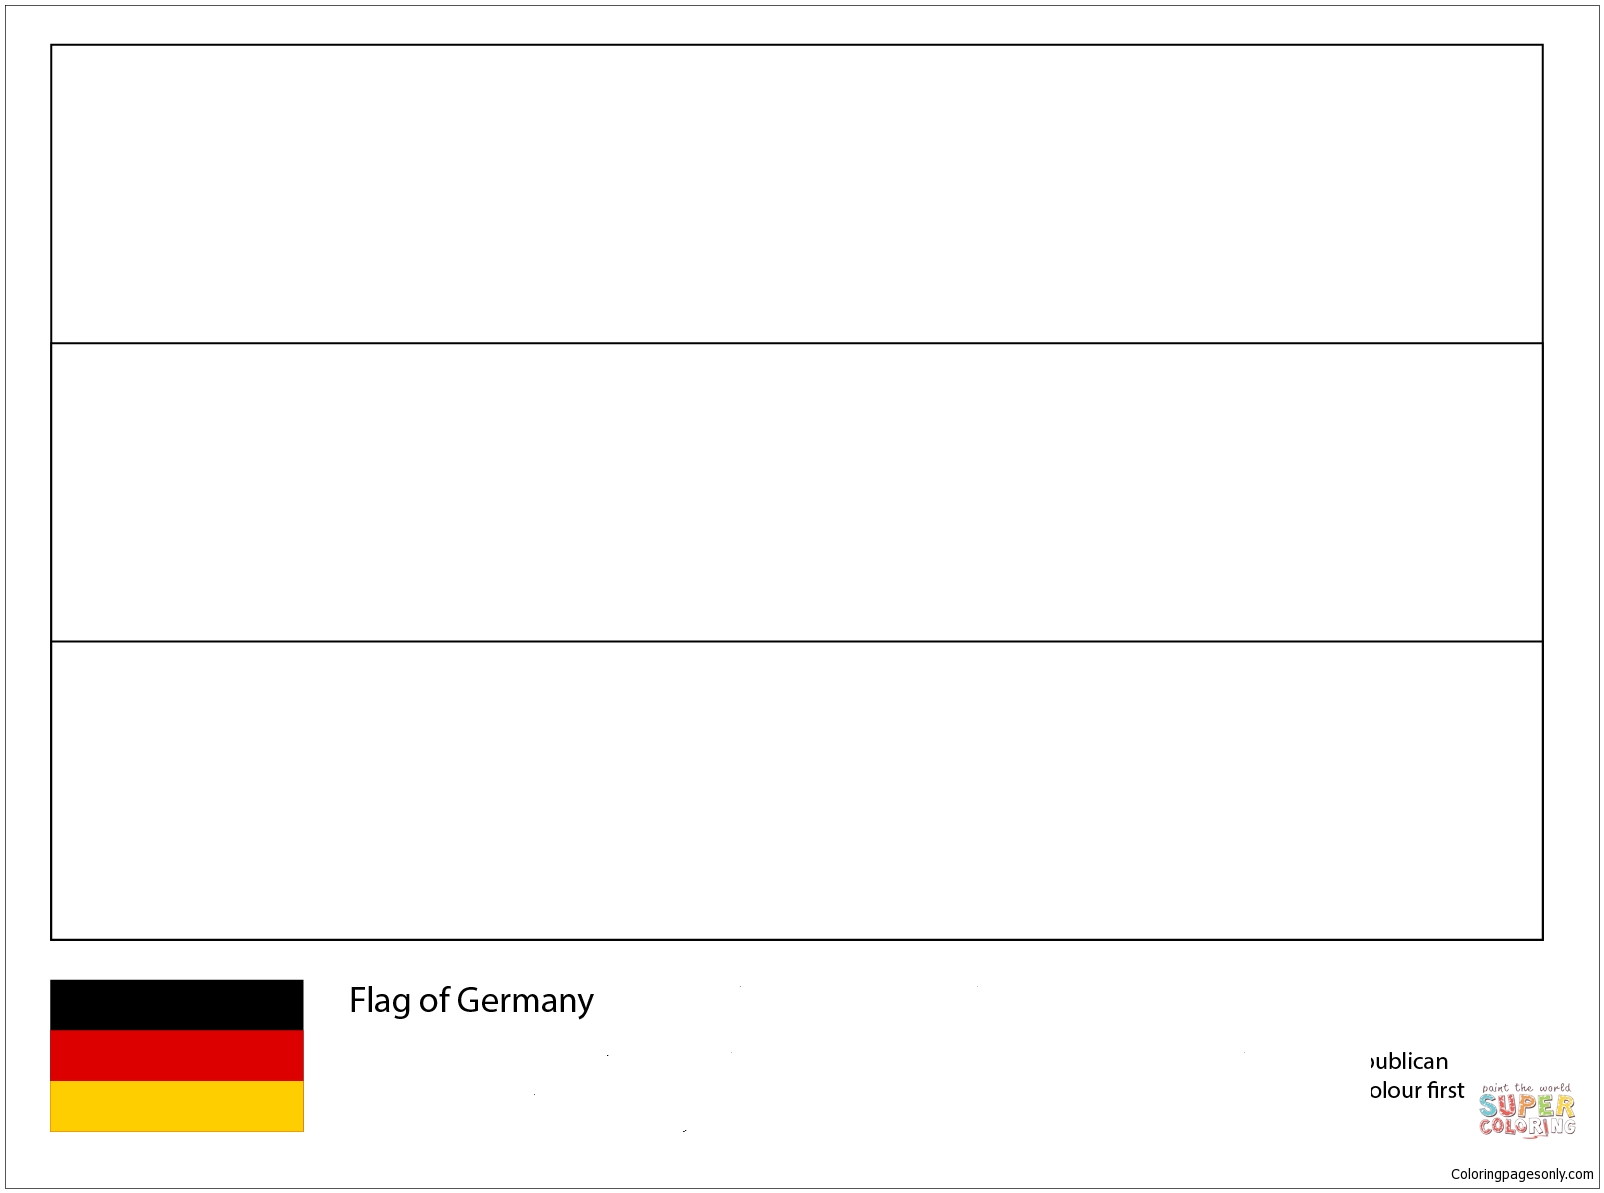 Vlag van Duitsland-Wereldkampioenschap 2018 van WK 2018-vlaggen